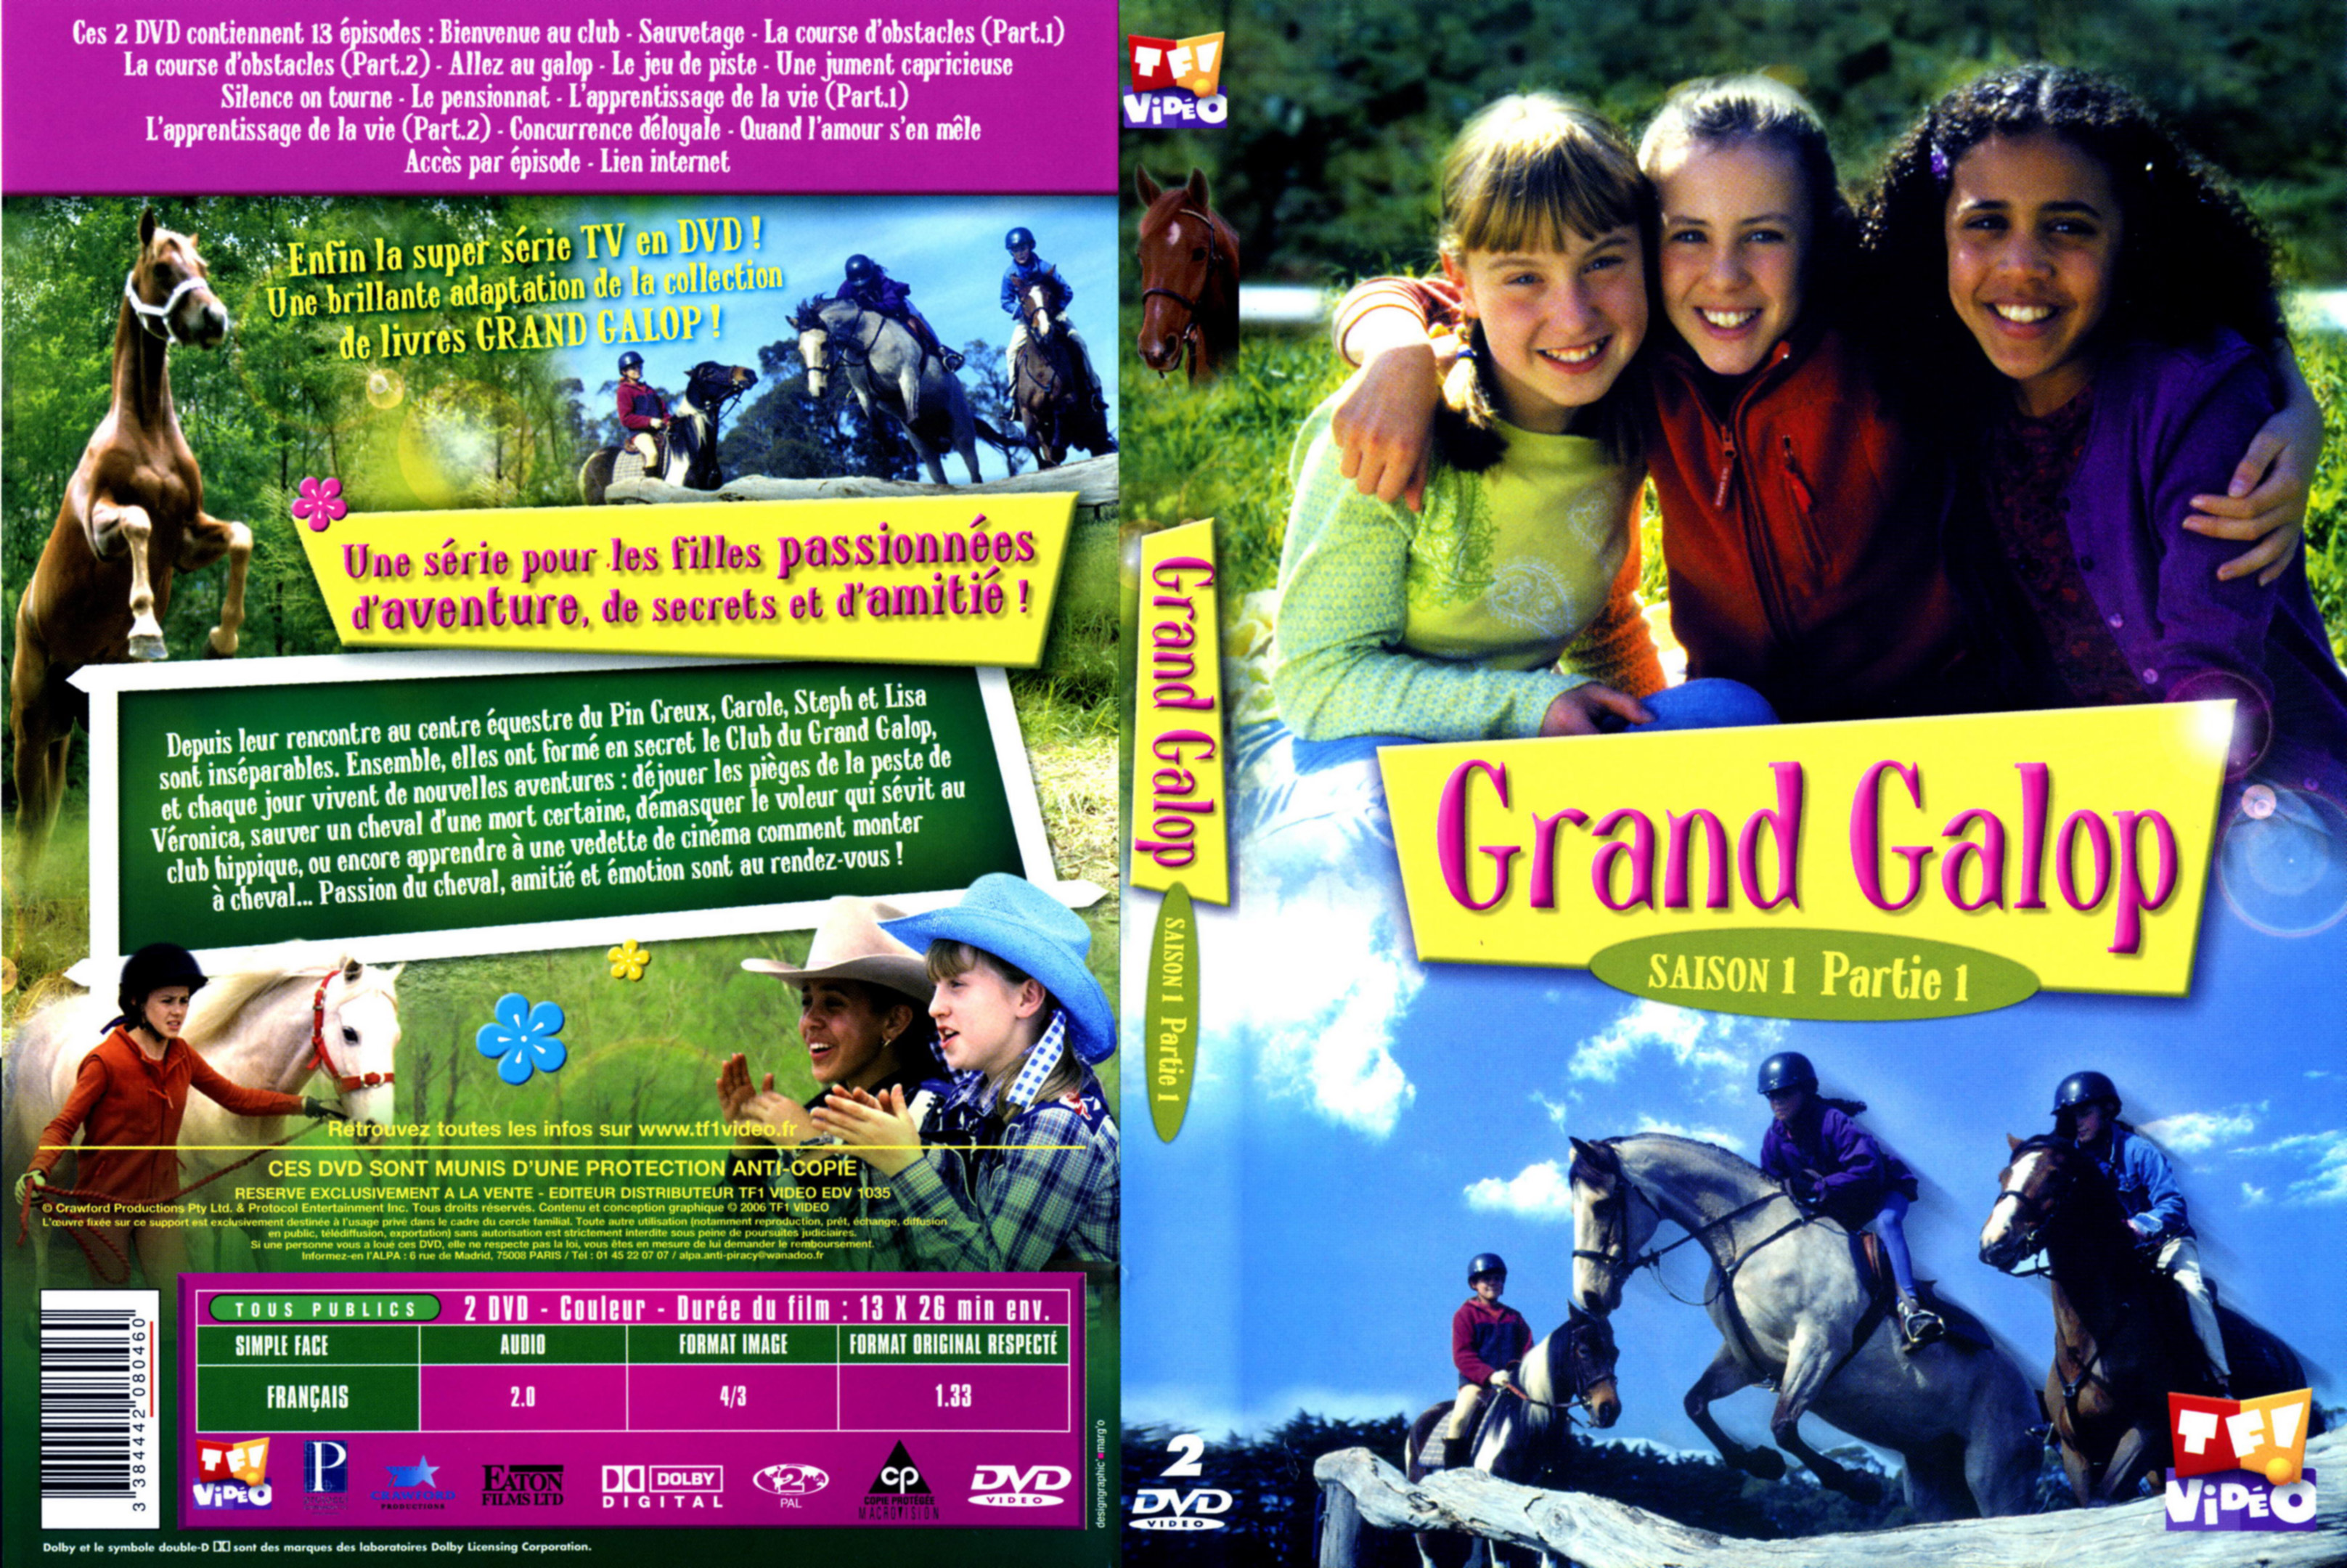 Jaquette DVD Grand galop Saison 1 Partie 1